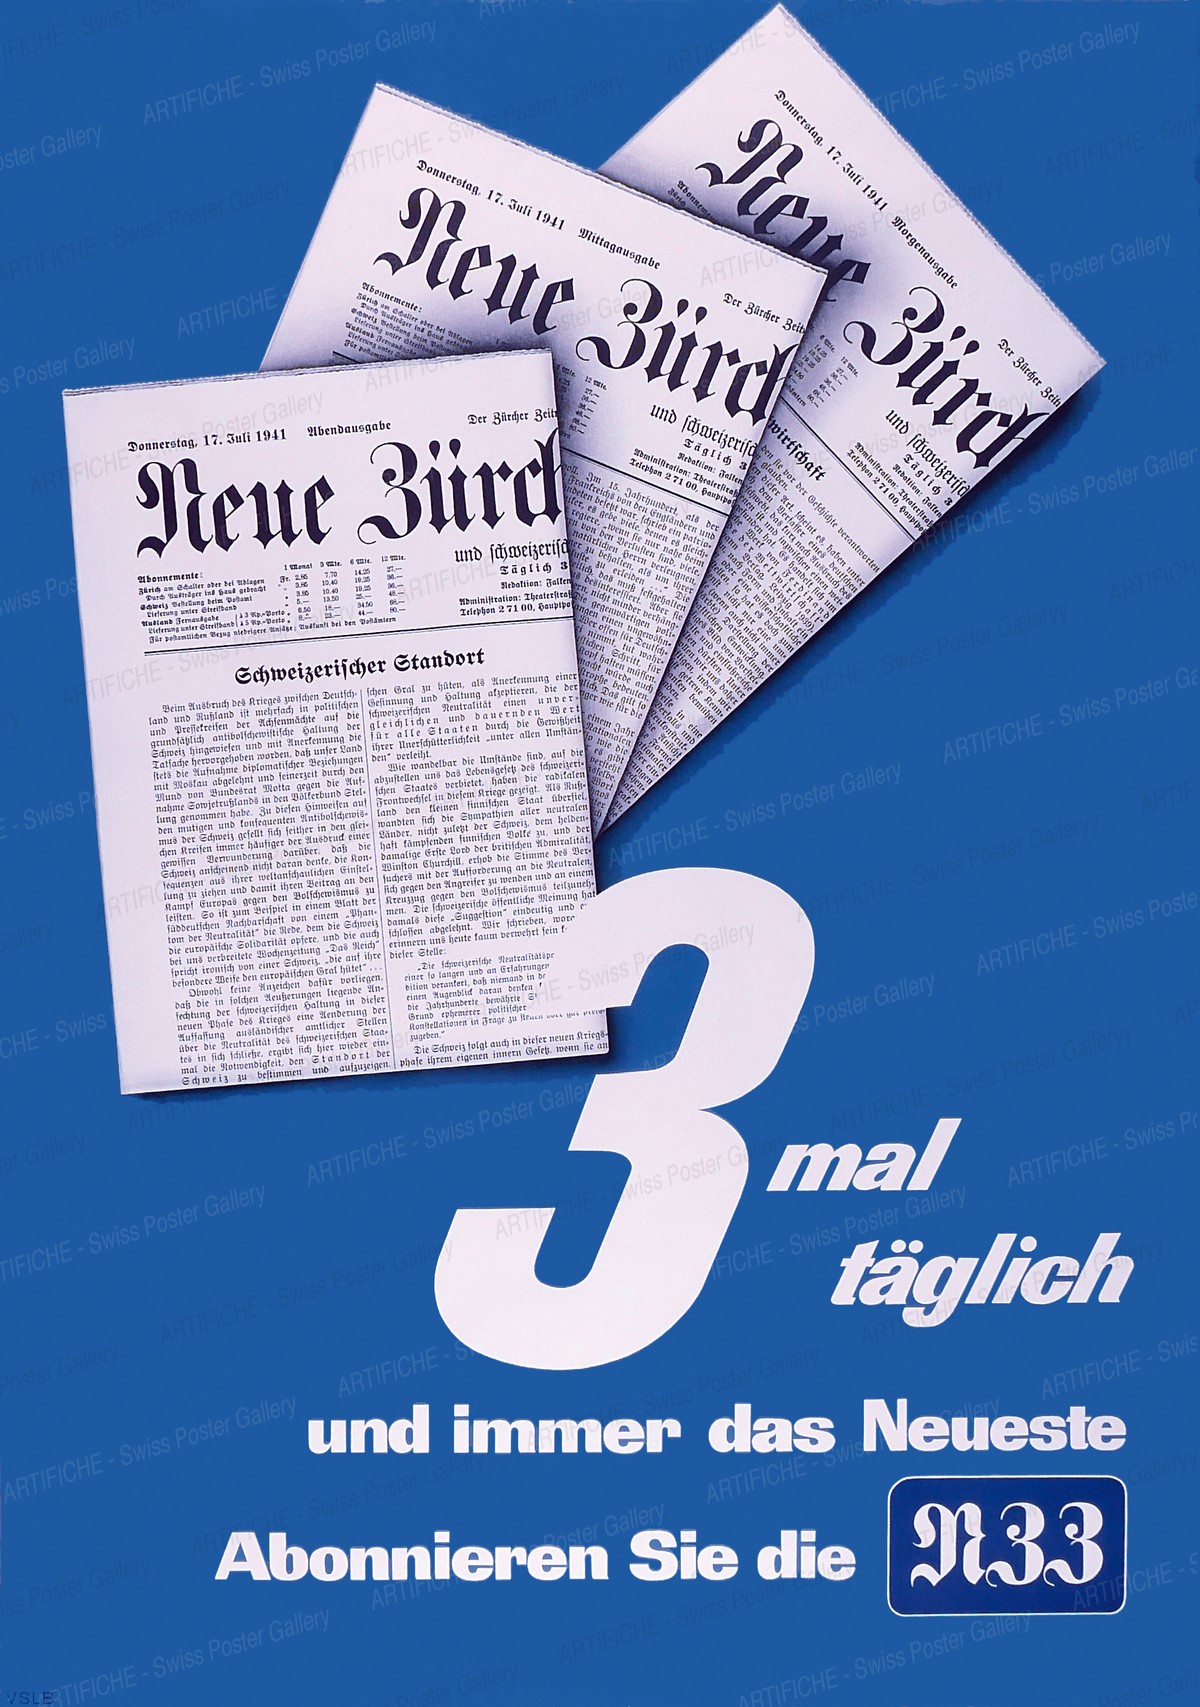 Neue Zürcher Zeitung – 3 x täglich, Artist unknown